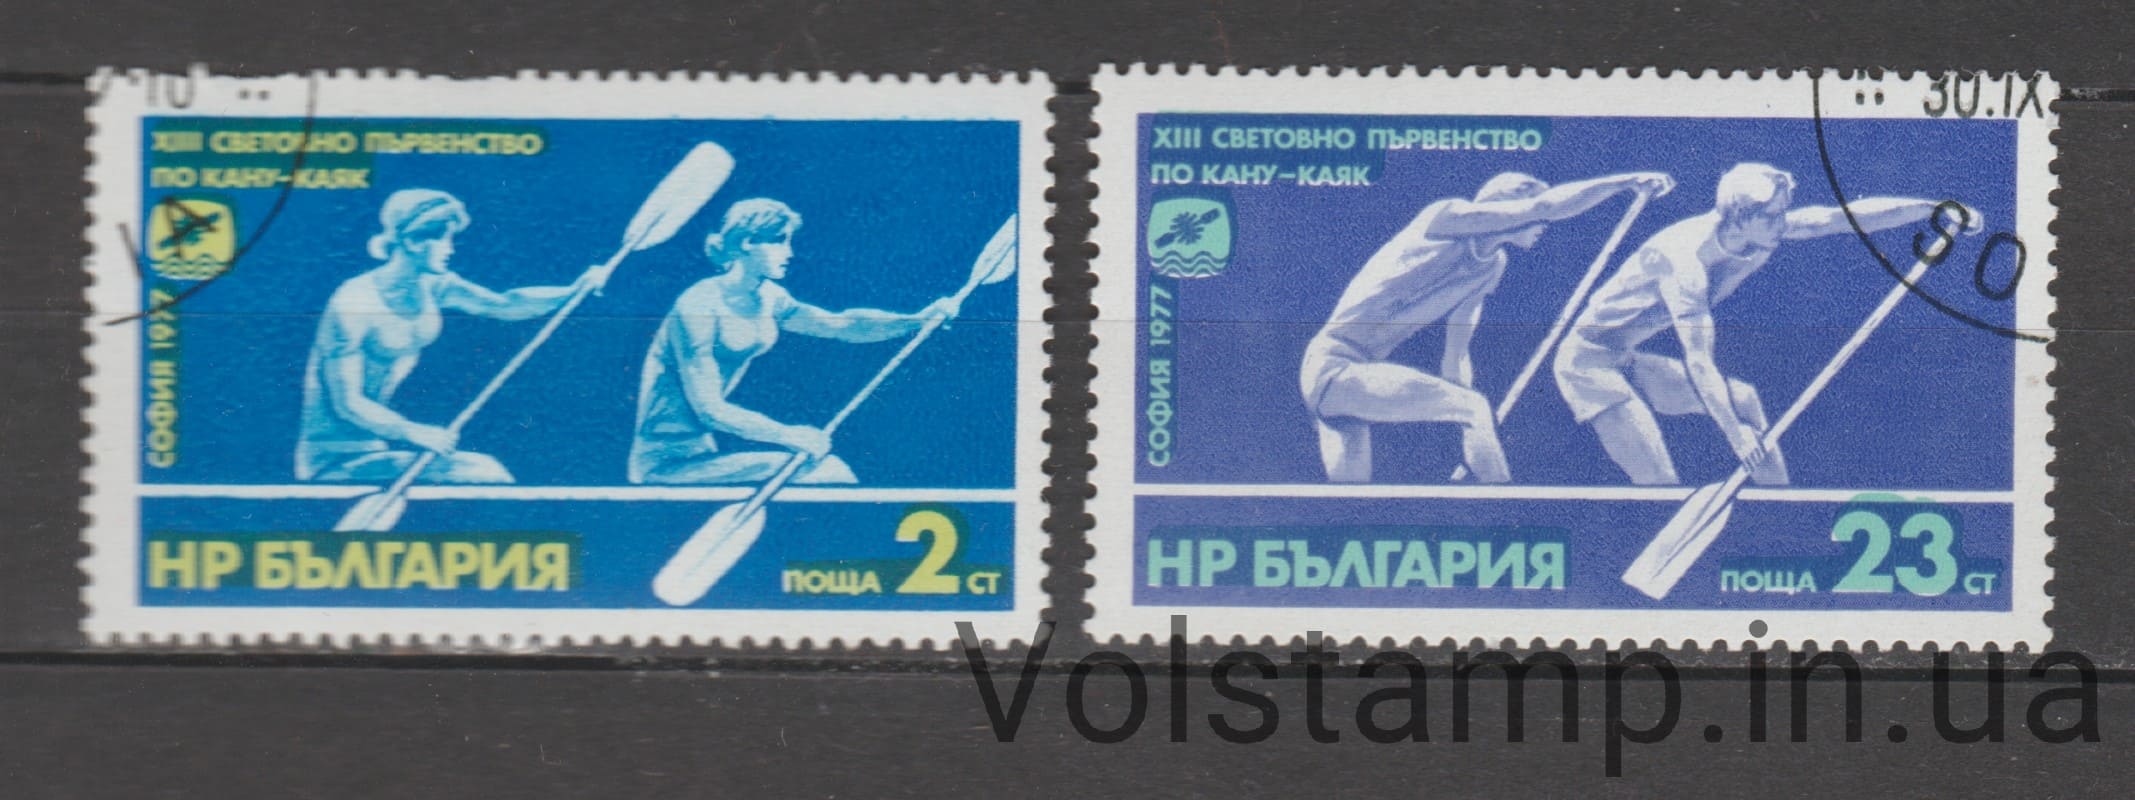 1977 Болгария Серия марок (13-й чемпионат мира по каноэ) Гашеные №2629-2630